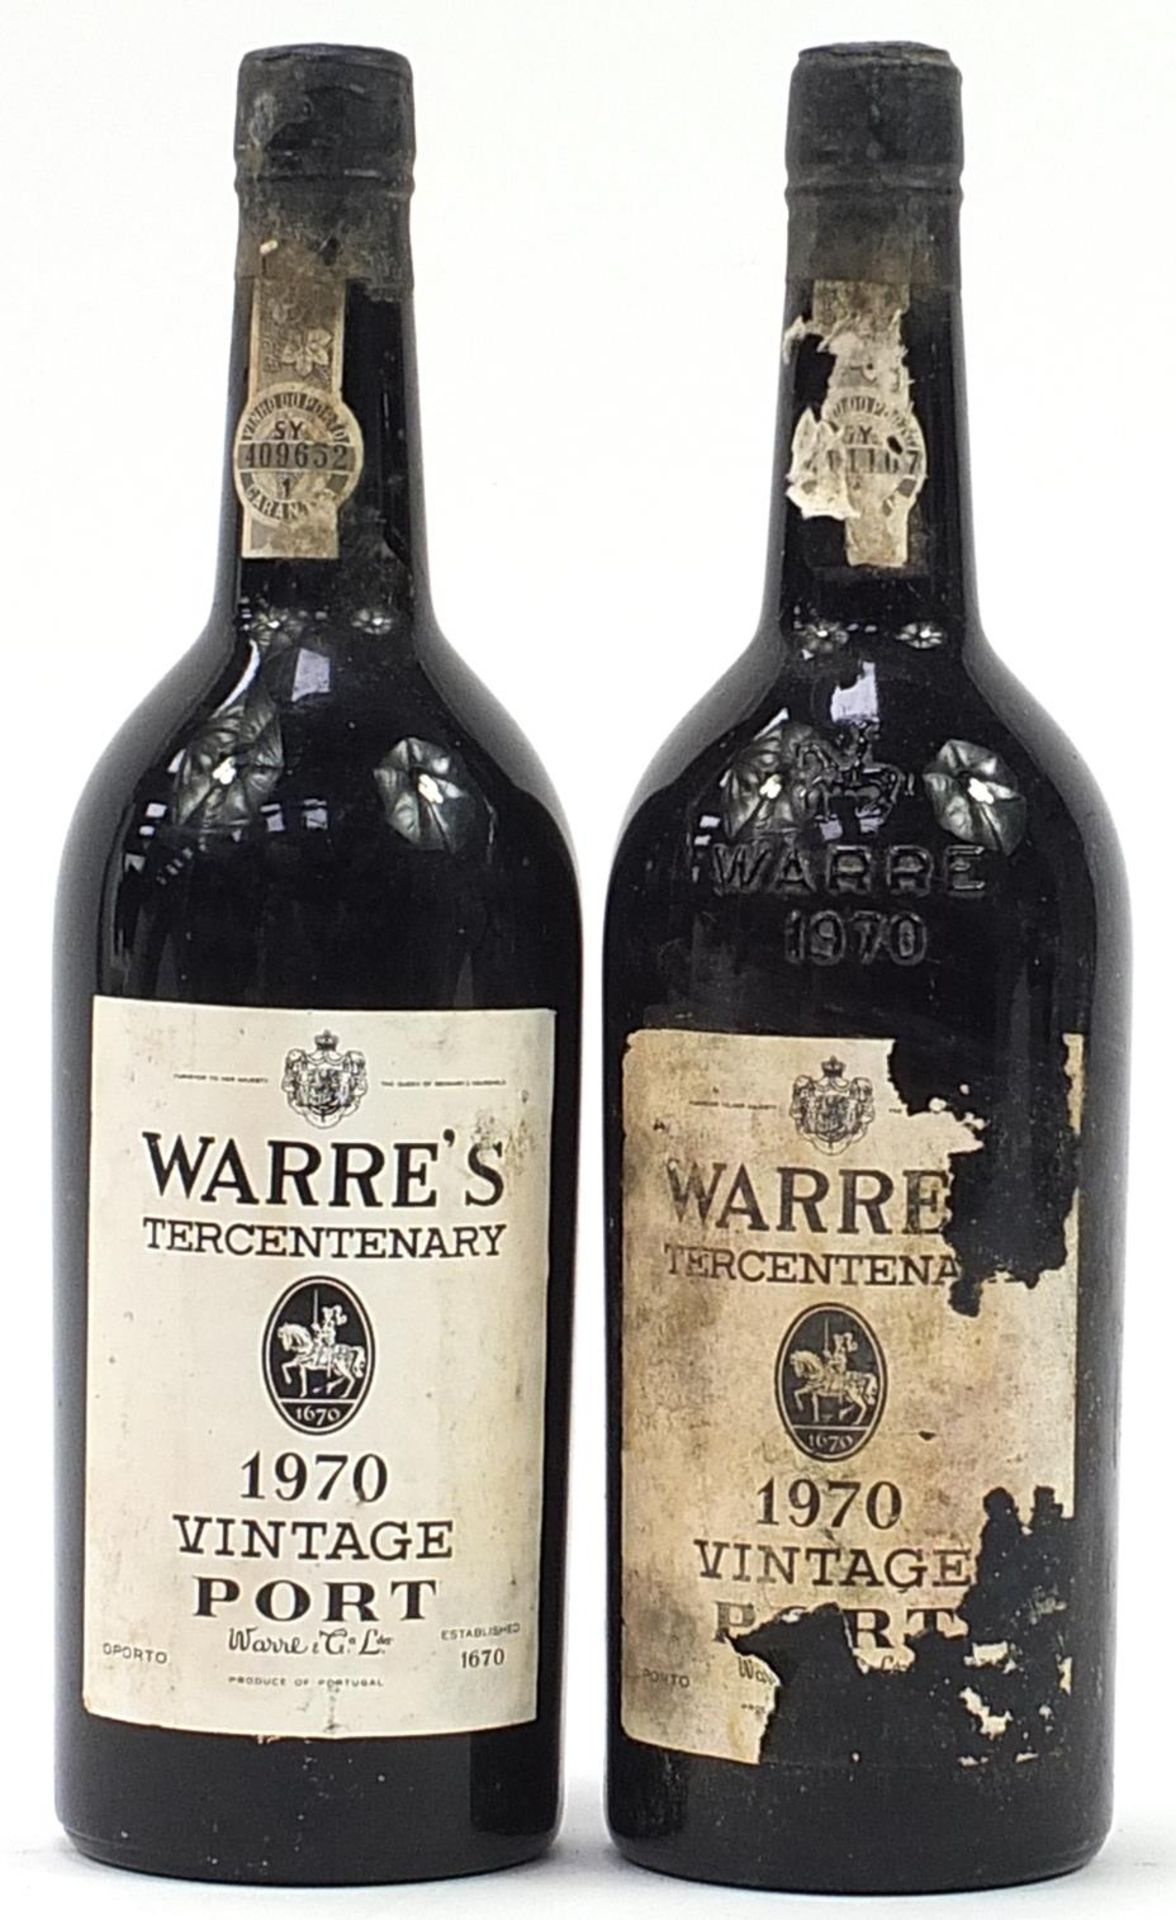 Two bottles of Warre's 1970 Tercentenary vintage port